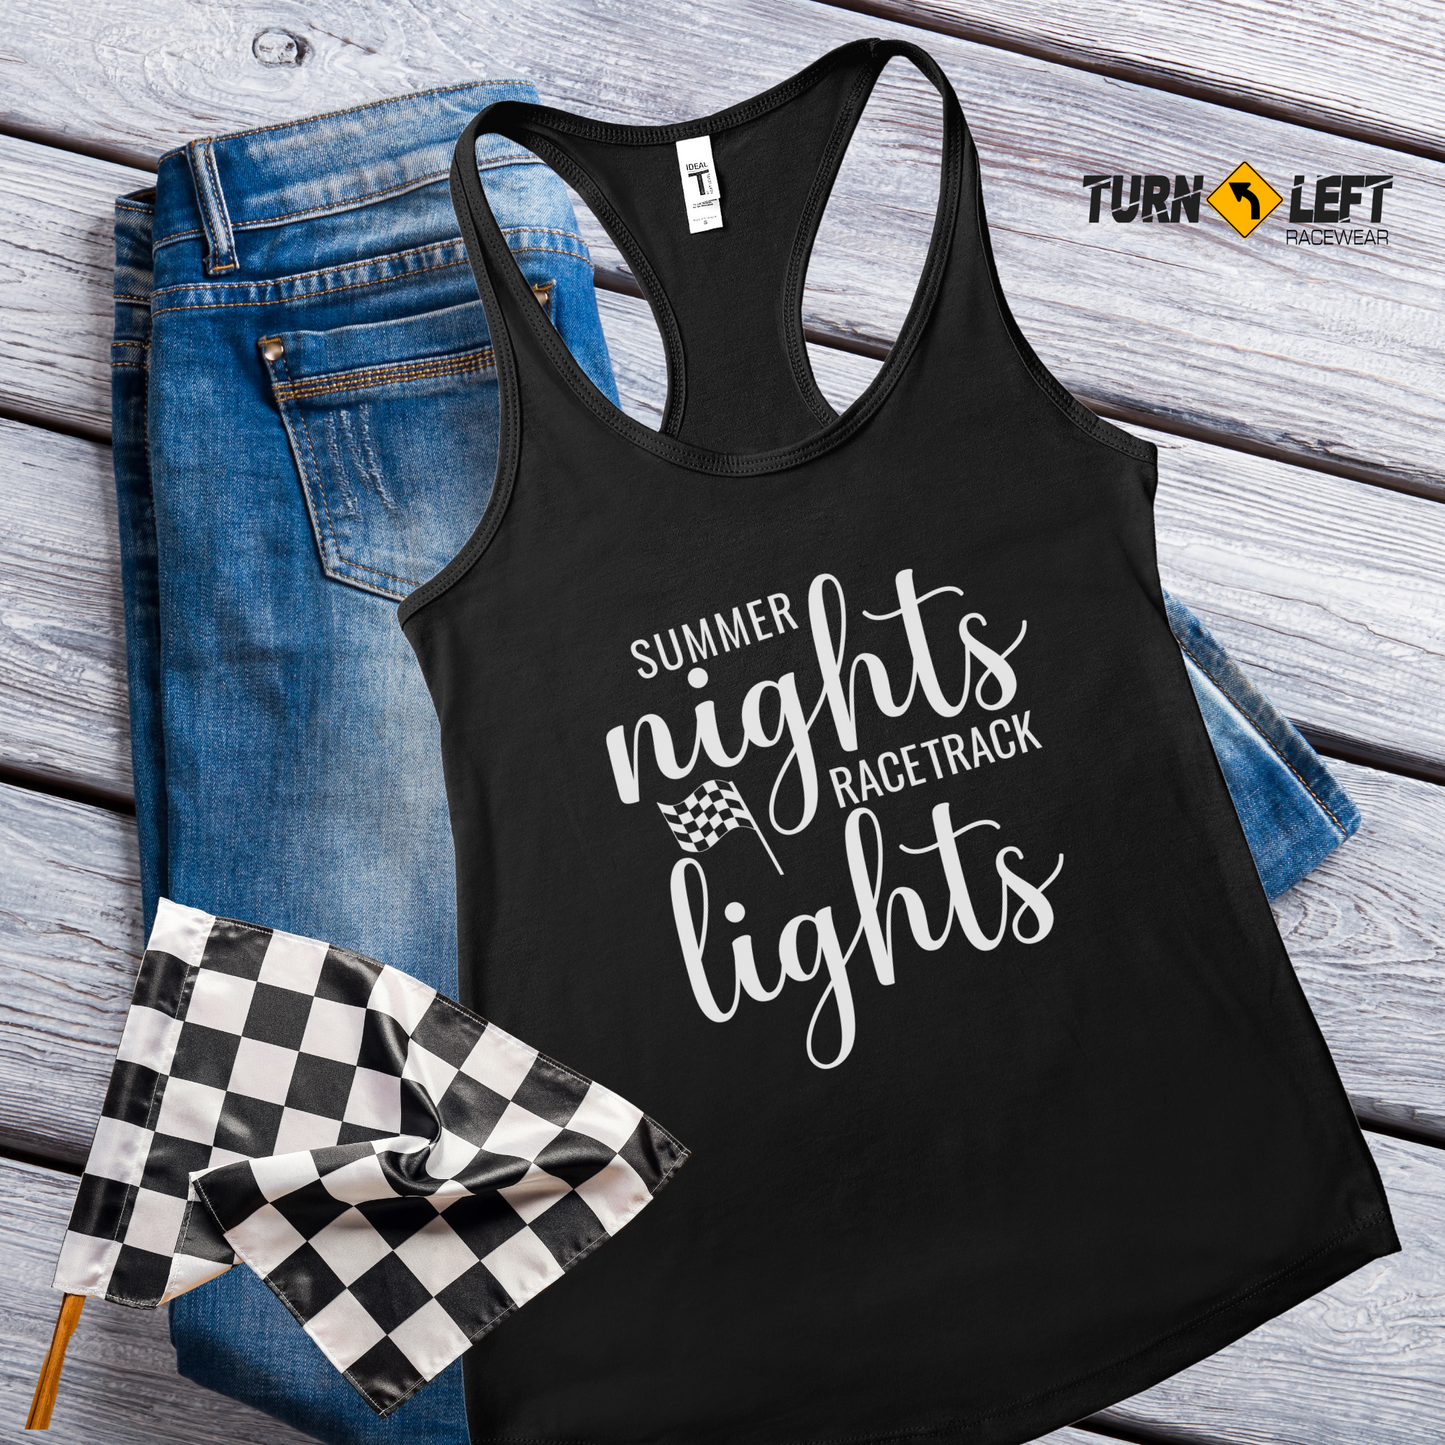 Women's dirt track racing tank tops. Race wife shirts, racing fan race gear for women. Summer nights racetrack lights. Racing quote shirts, racing saying shirts for women.